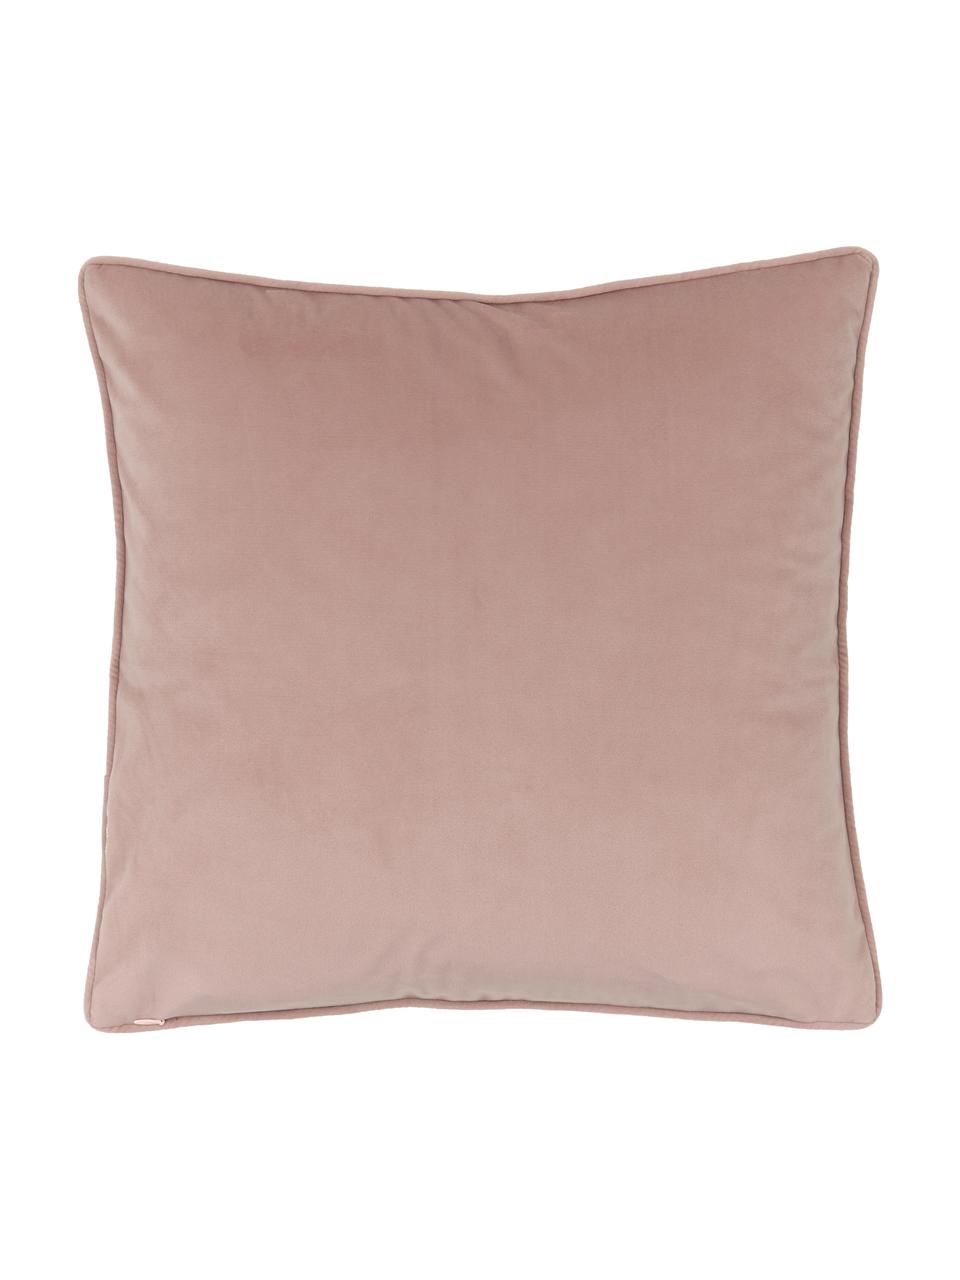 Poszewka na poduszkę z aksamitu Blossom, 100% aksamit poliestrowy, Brudny różowy, S 45 x D 45 cm